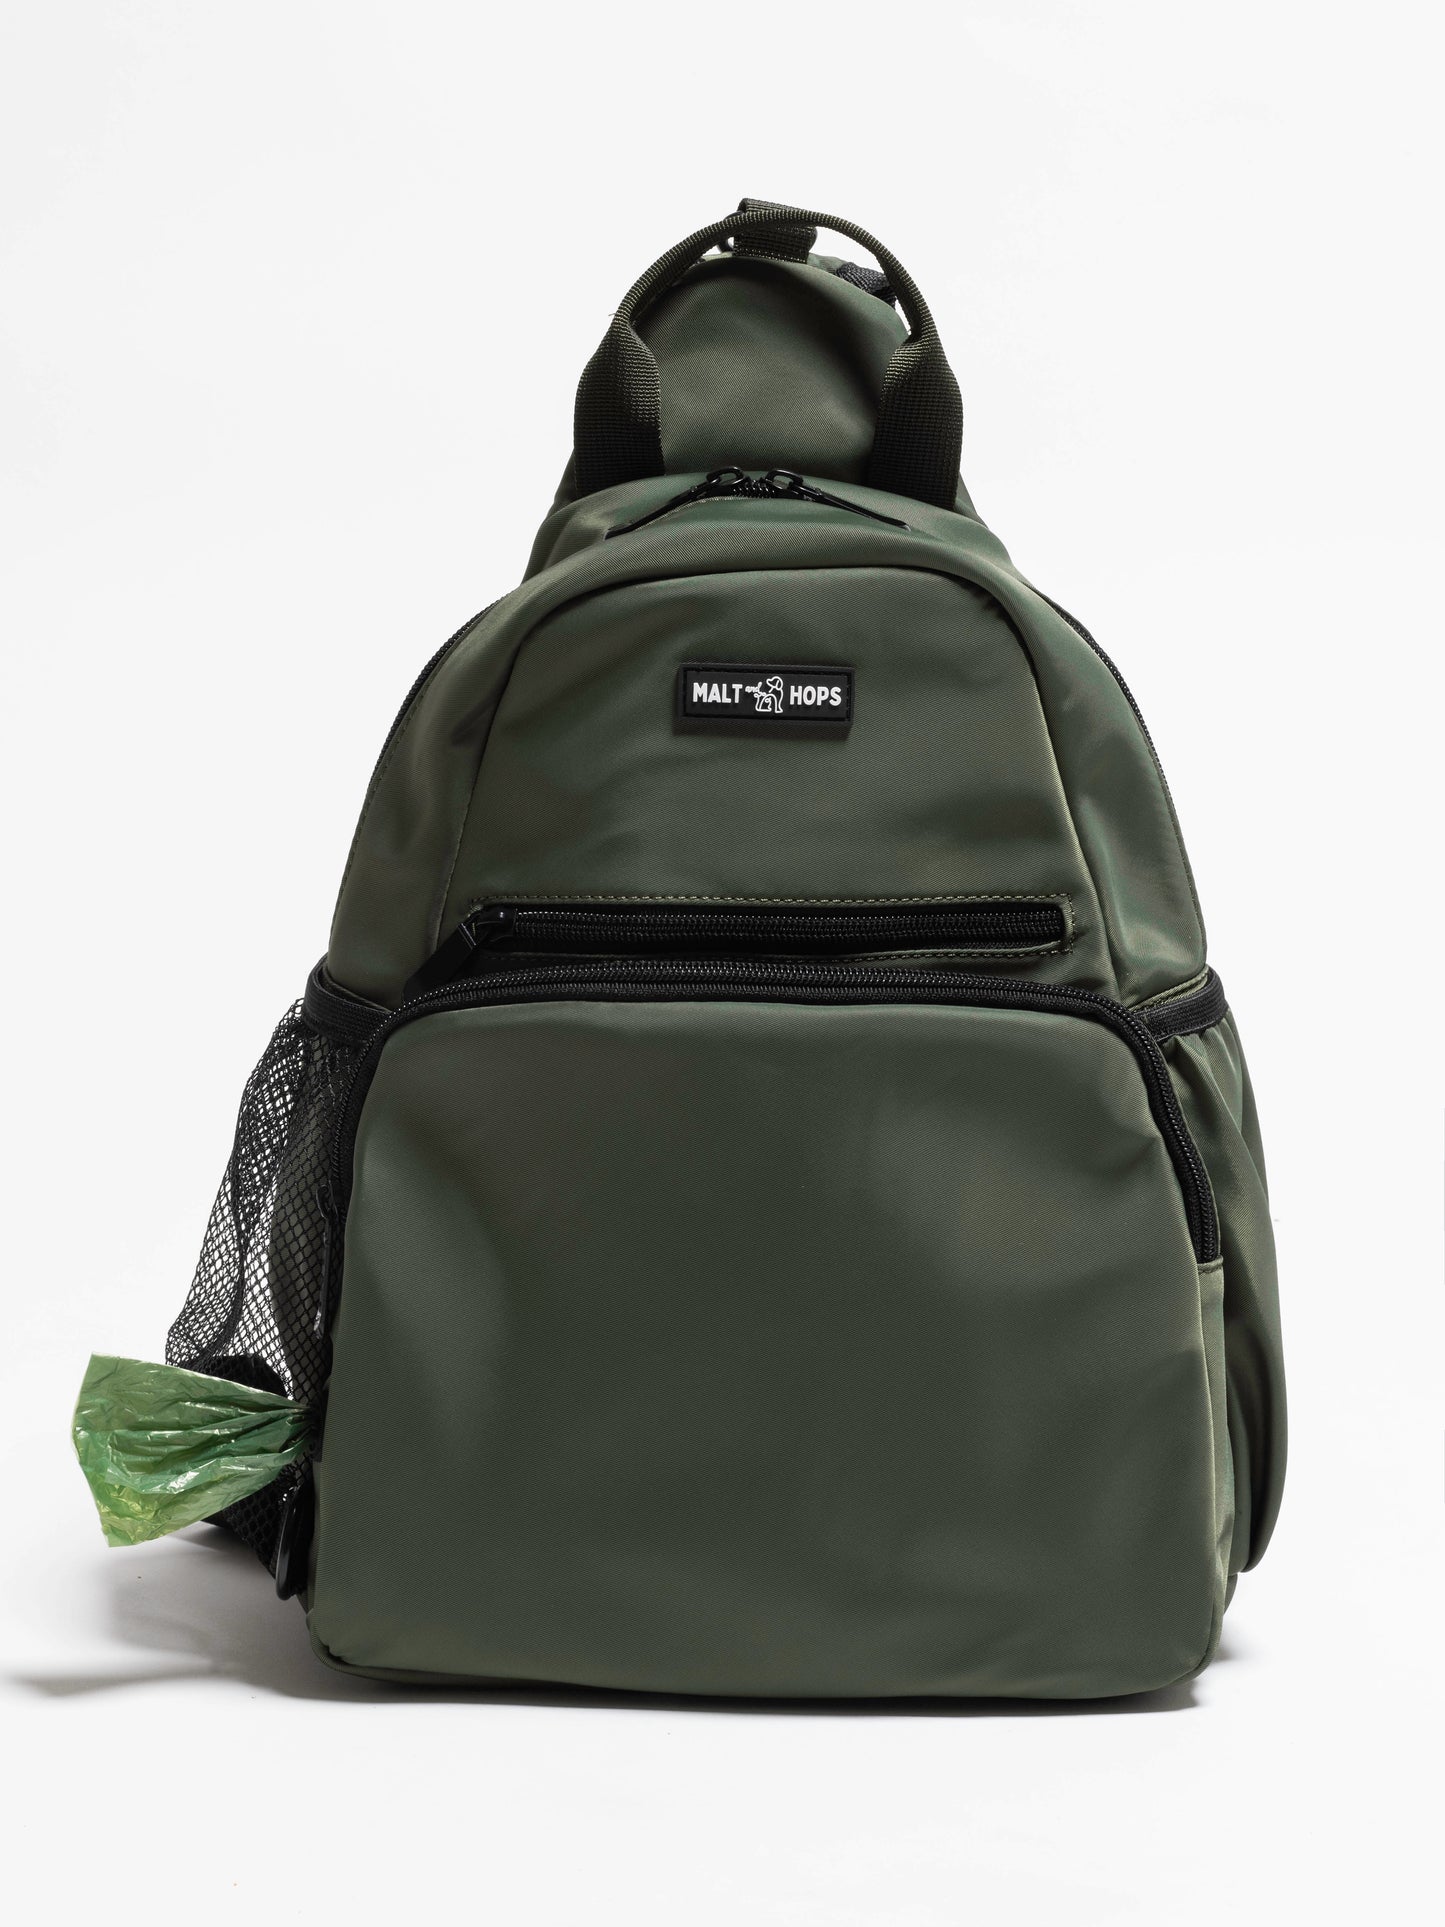 Olive Drab Gose Sling Backpack